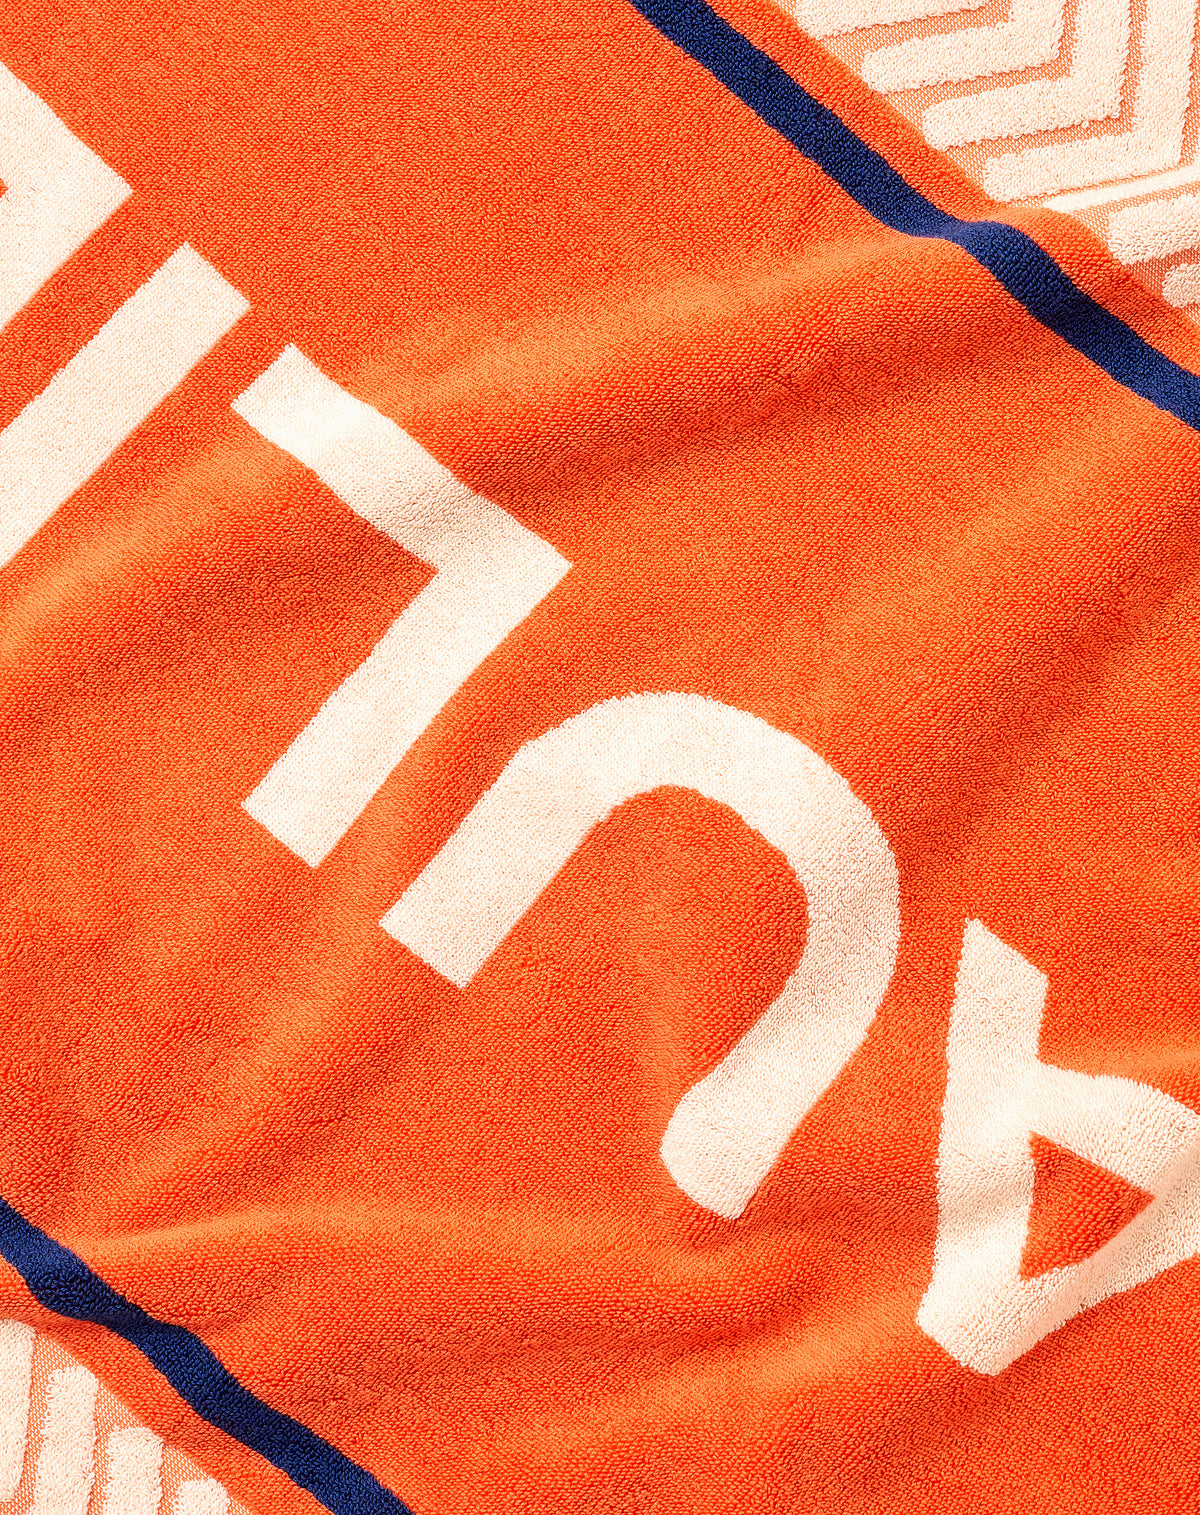 HAULIER Transit Towel - Orange